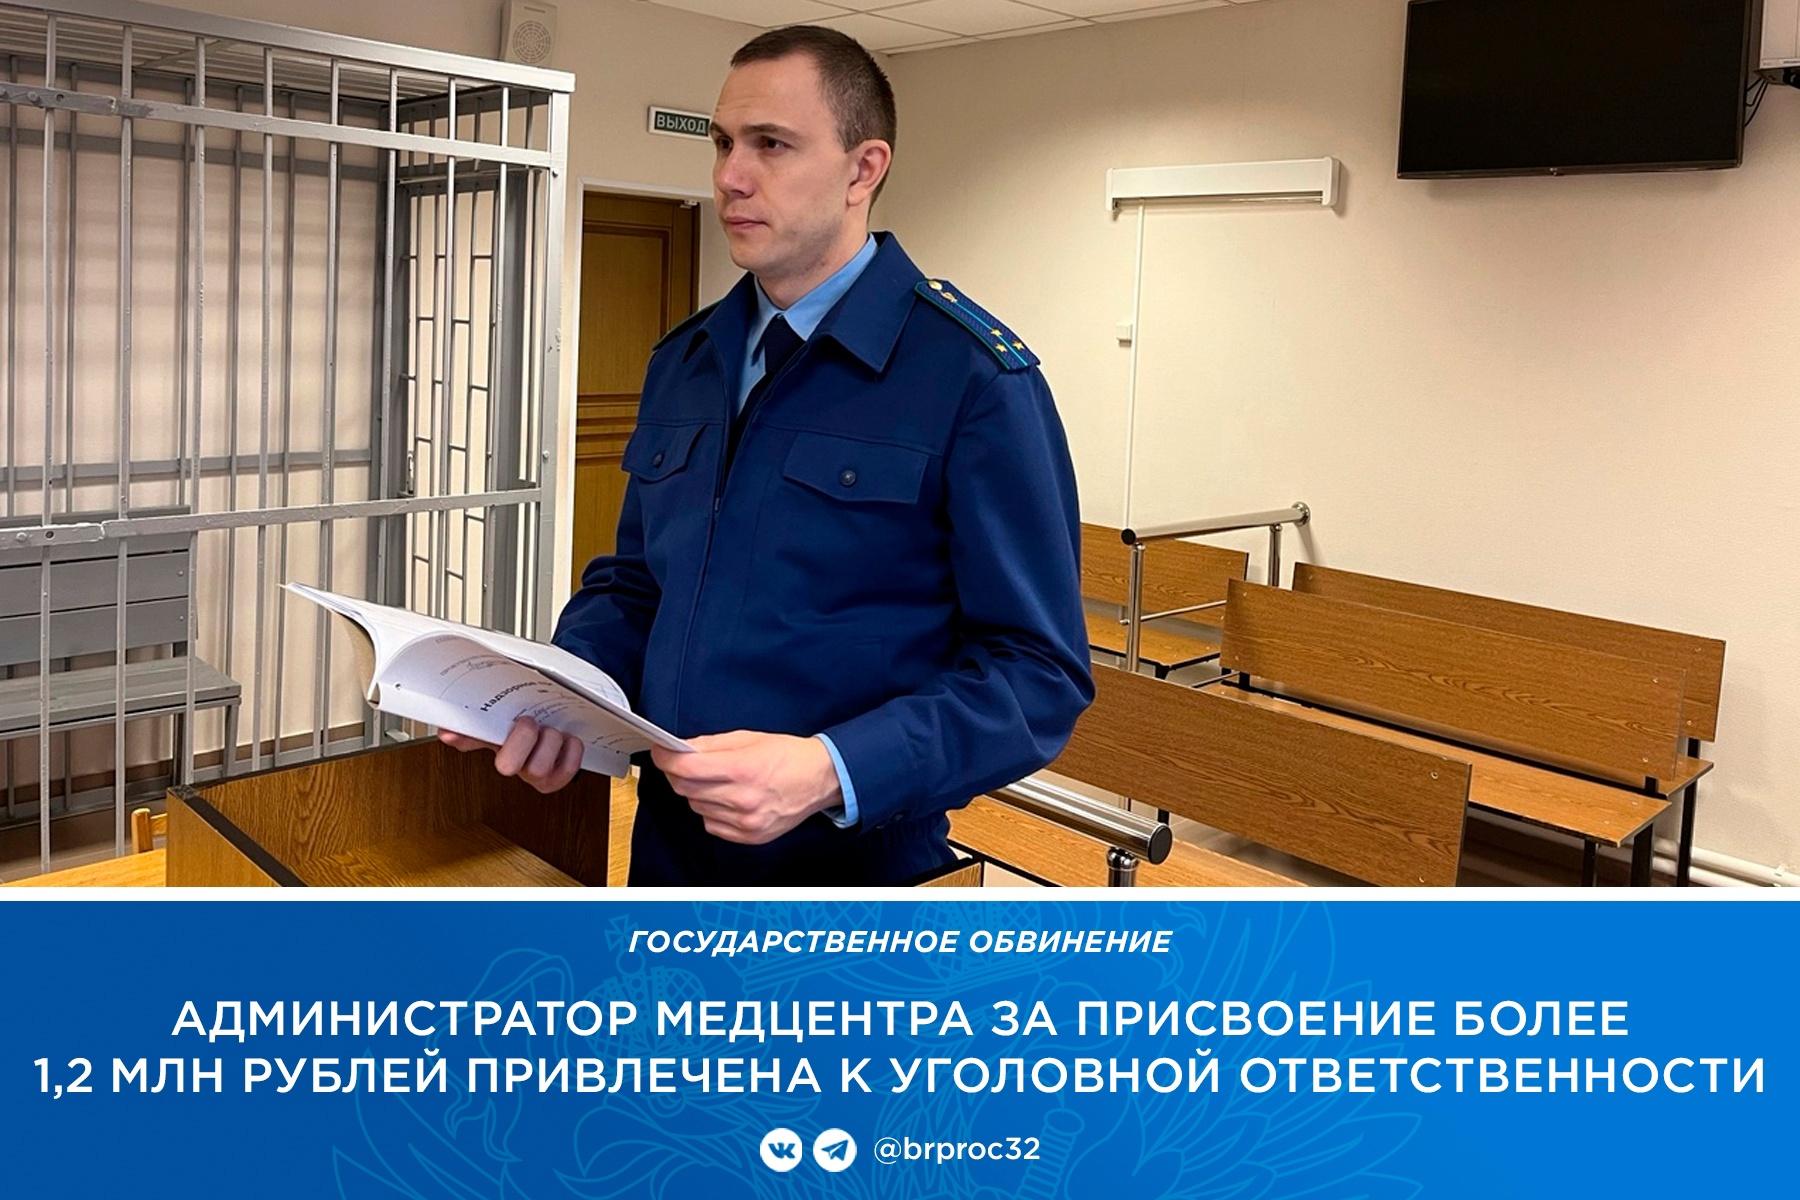 В Фокино администратор медцентра прикарманила 1,2 млн рублей и получила срок